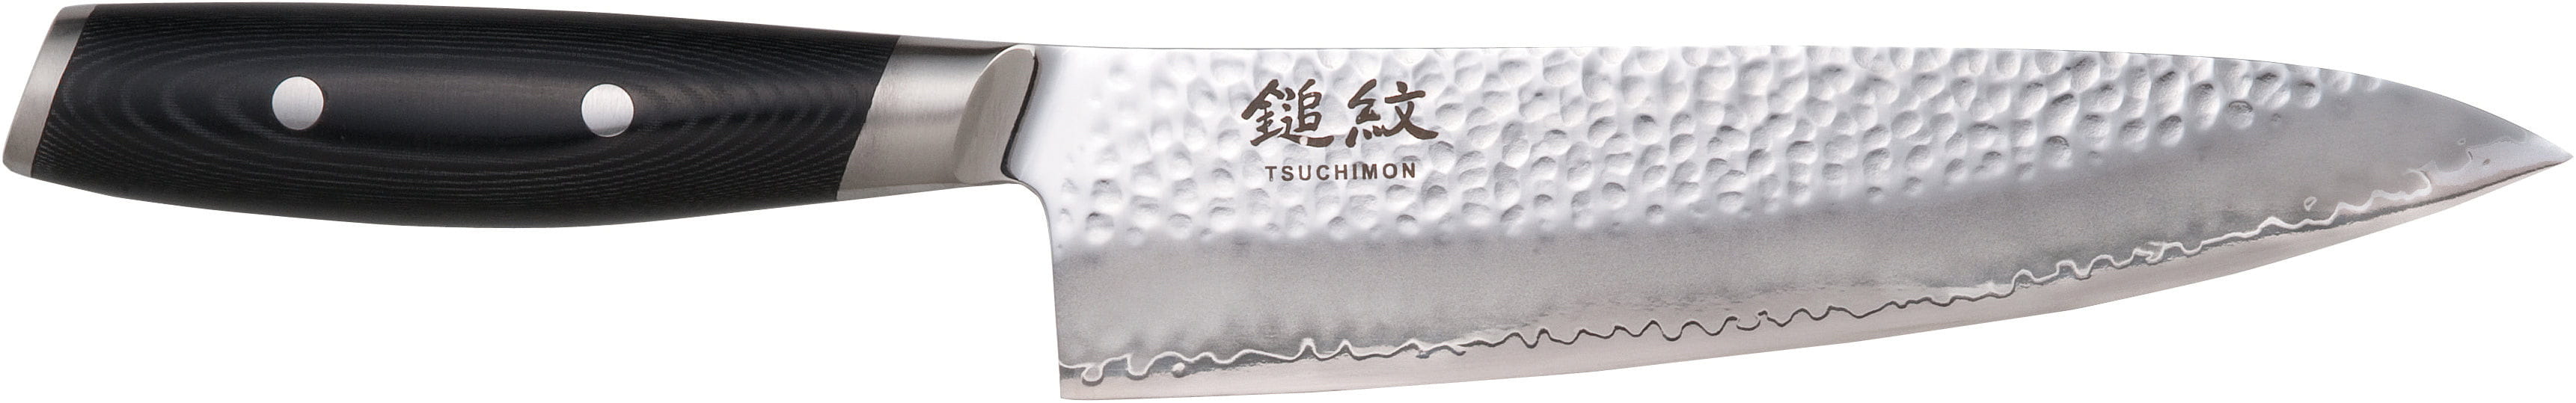 Cuchillo de chef de yaxell tsuchimon, 20 cm